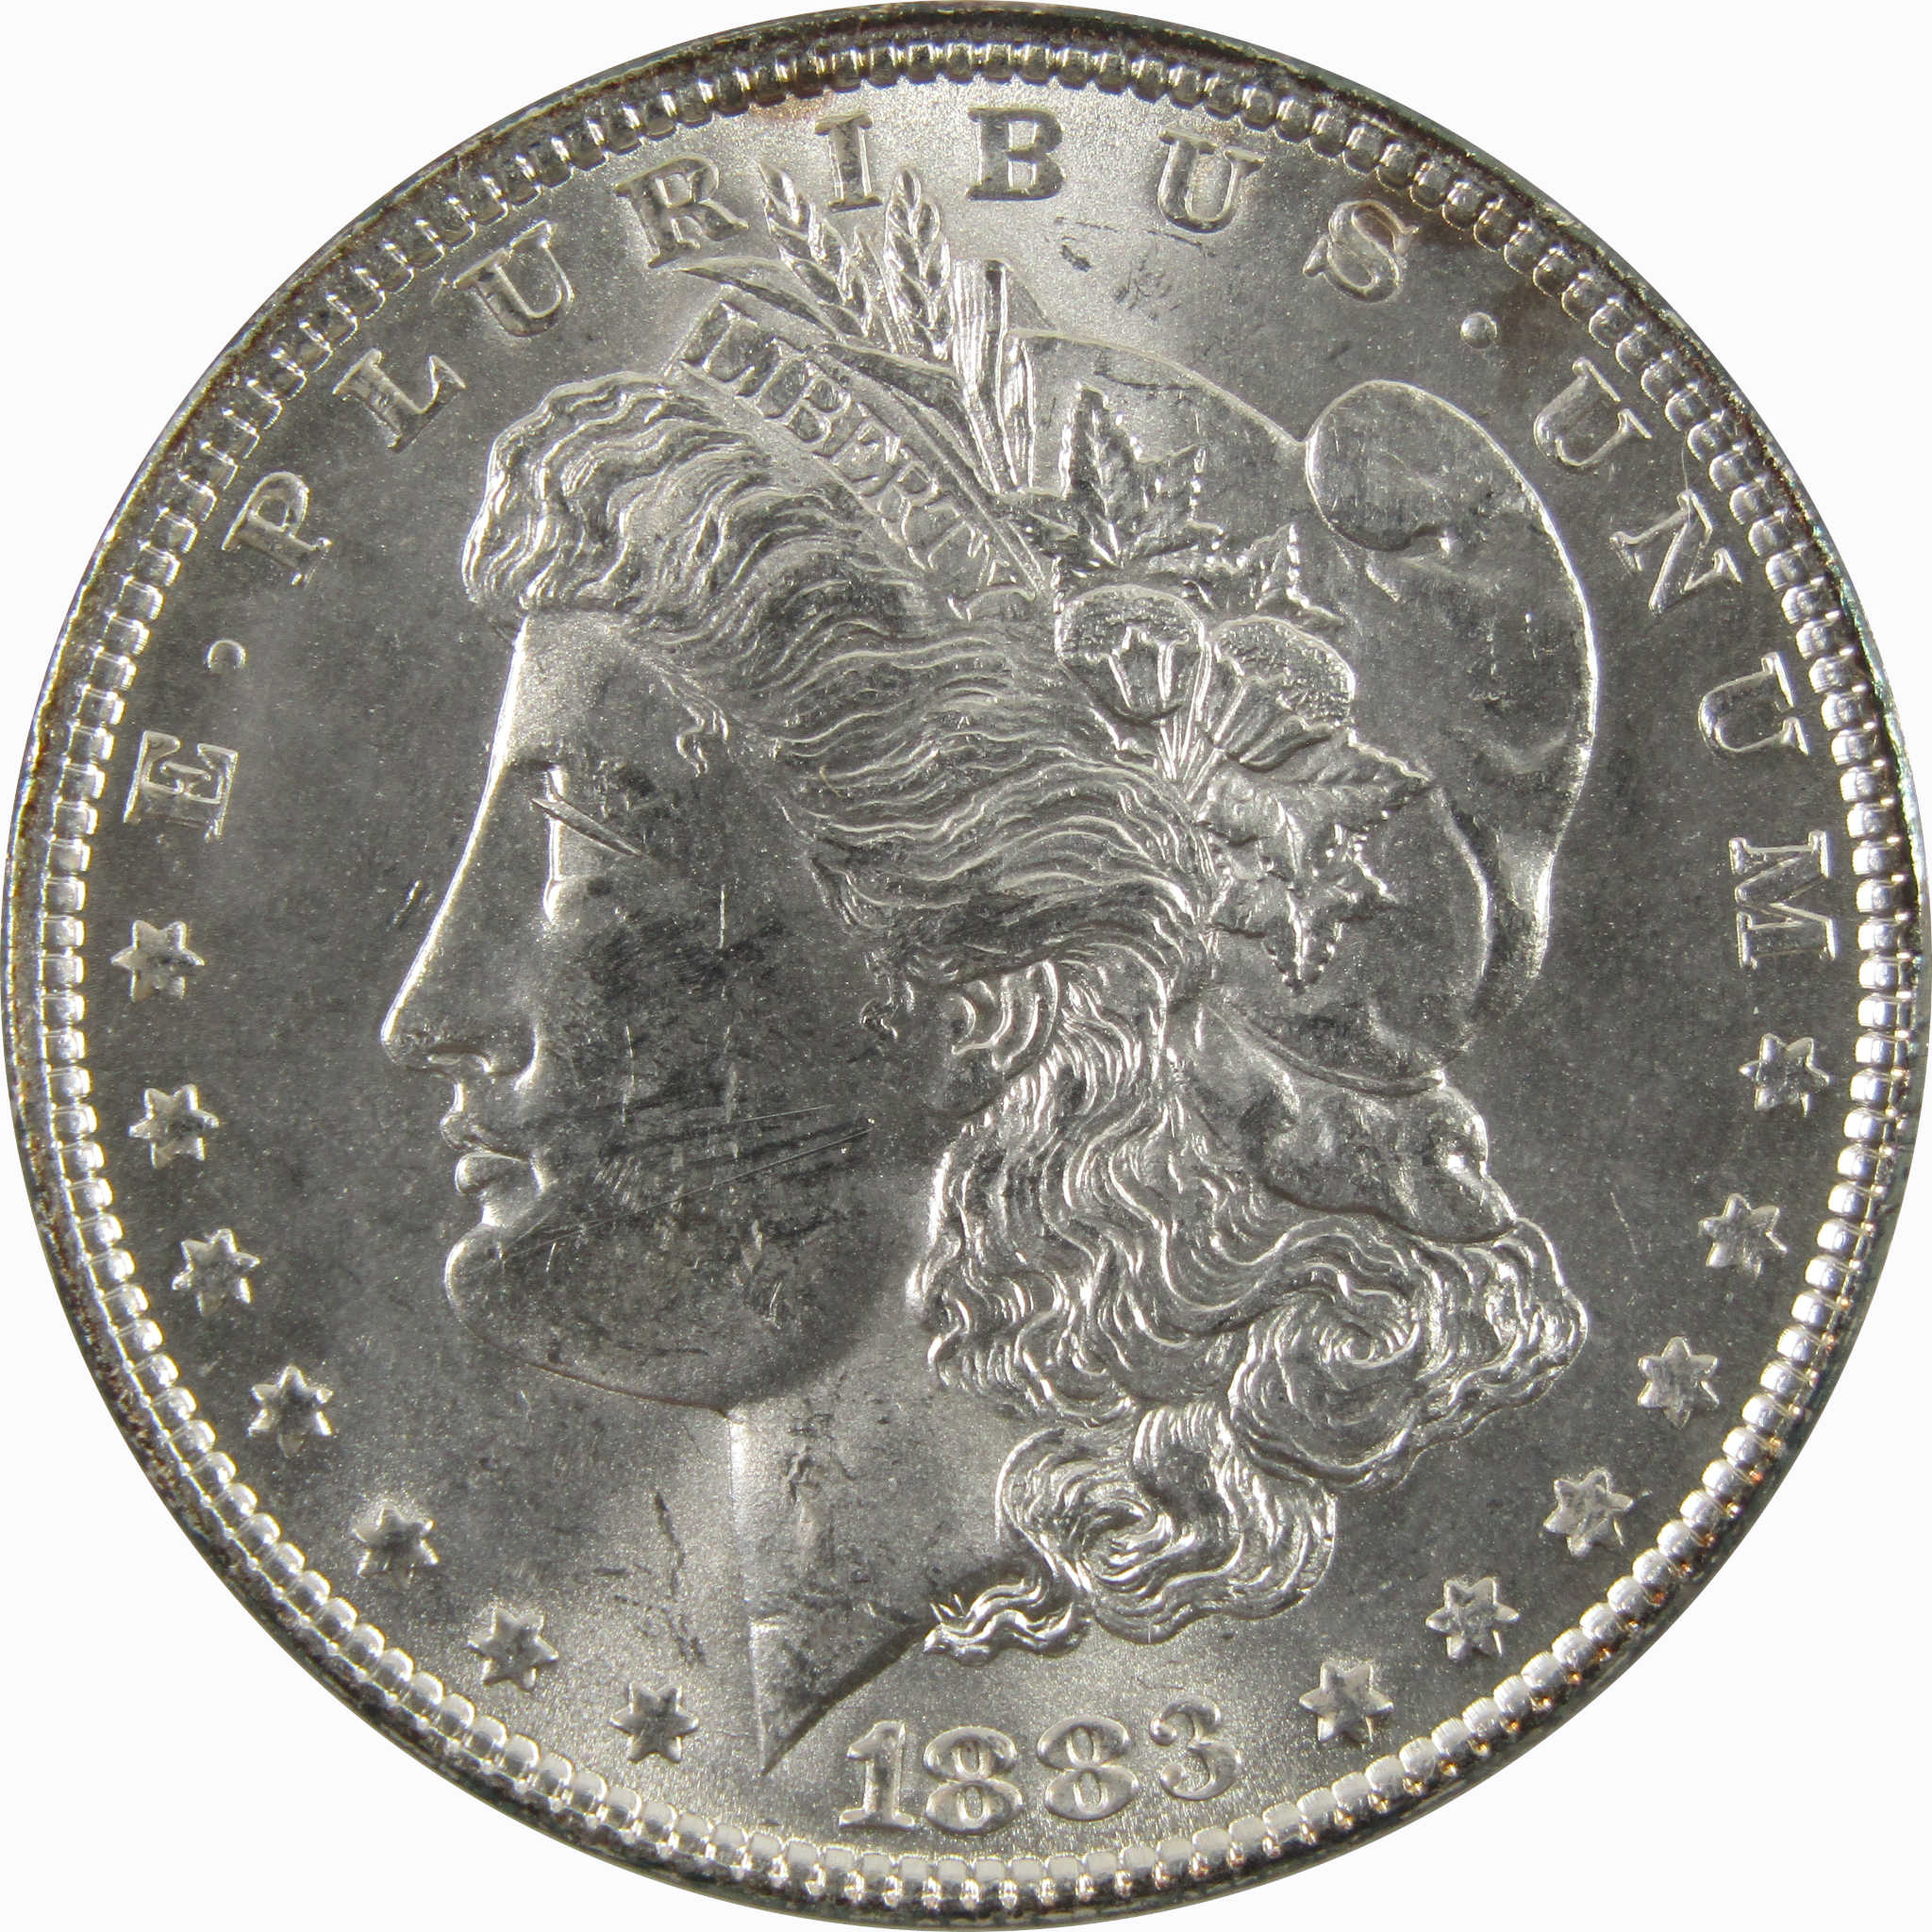 1883 Morgan Dollar BU Uncirculated 90% Silver $1 Coin SKU:CPC4864 - Morgan coin - Morgan silver dollar - Morgan silver dollar for sale - Profile Coins &amp; Collectibles